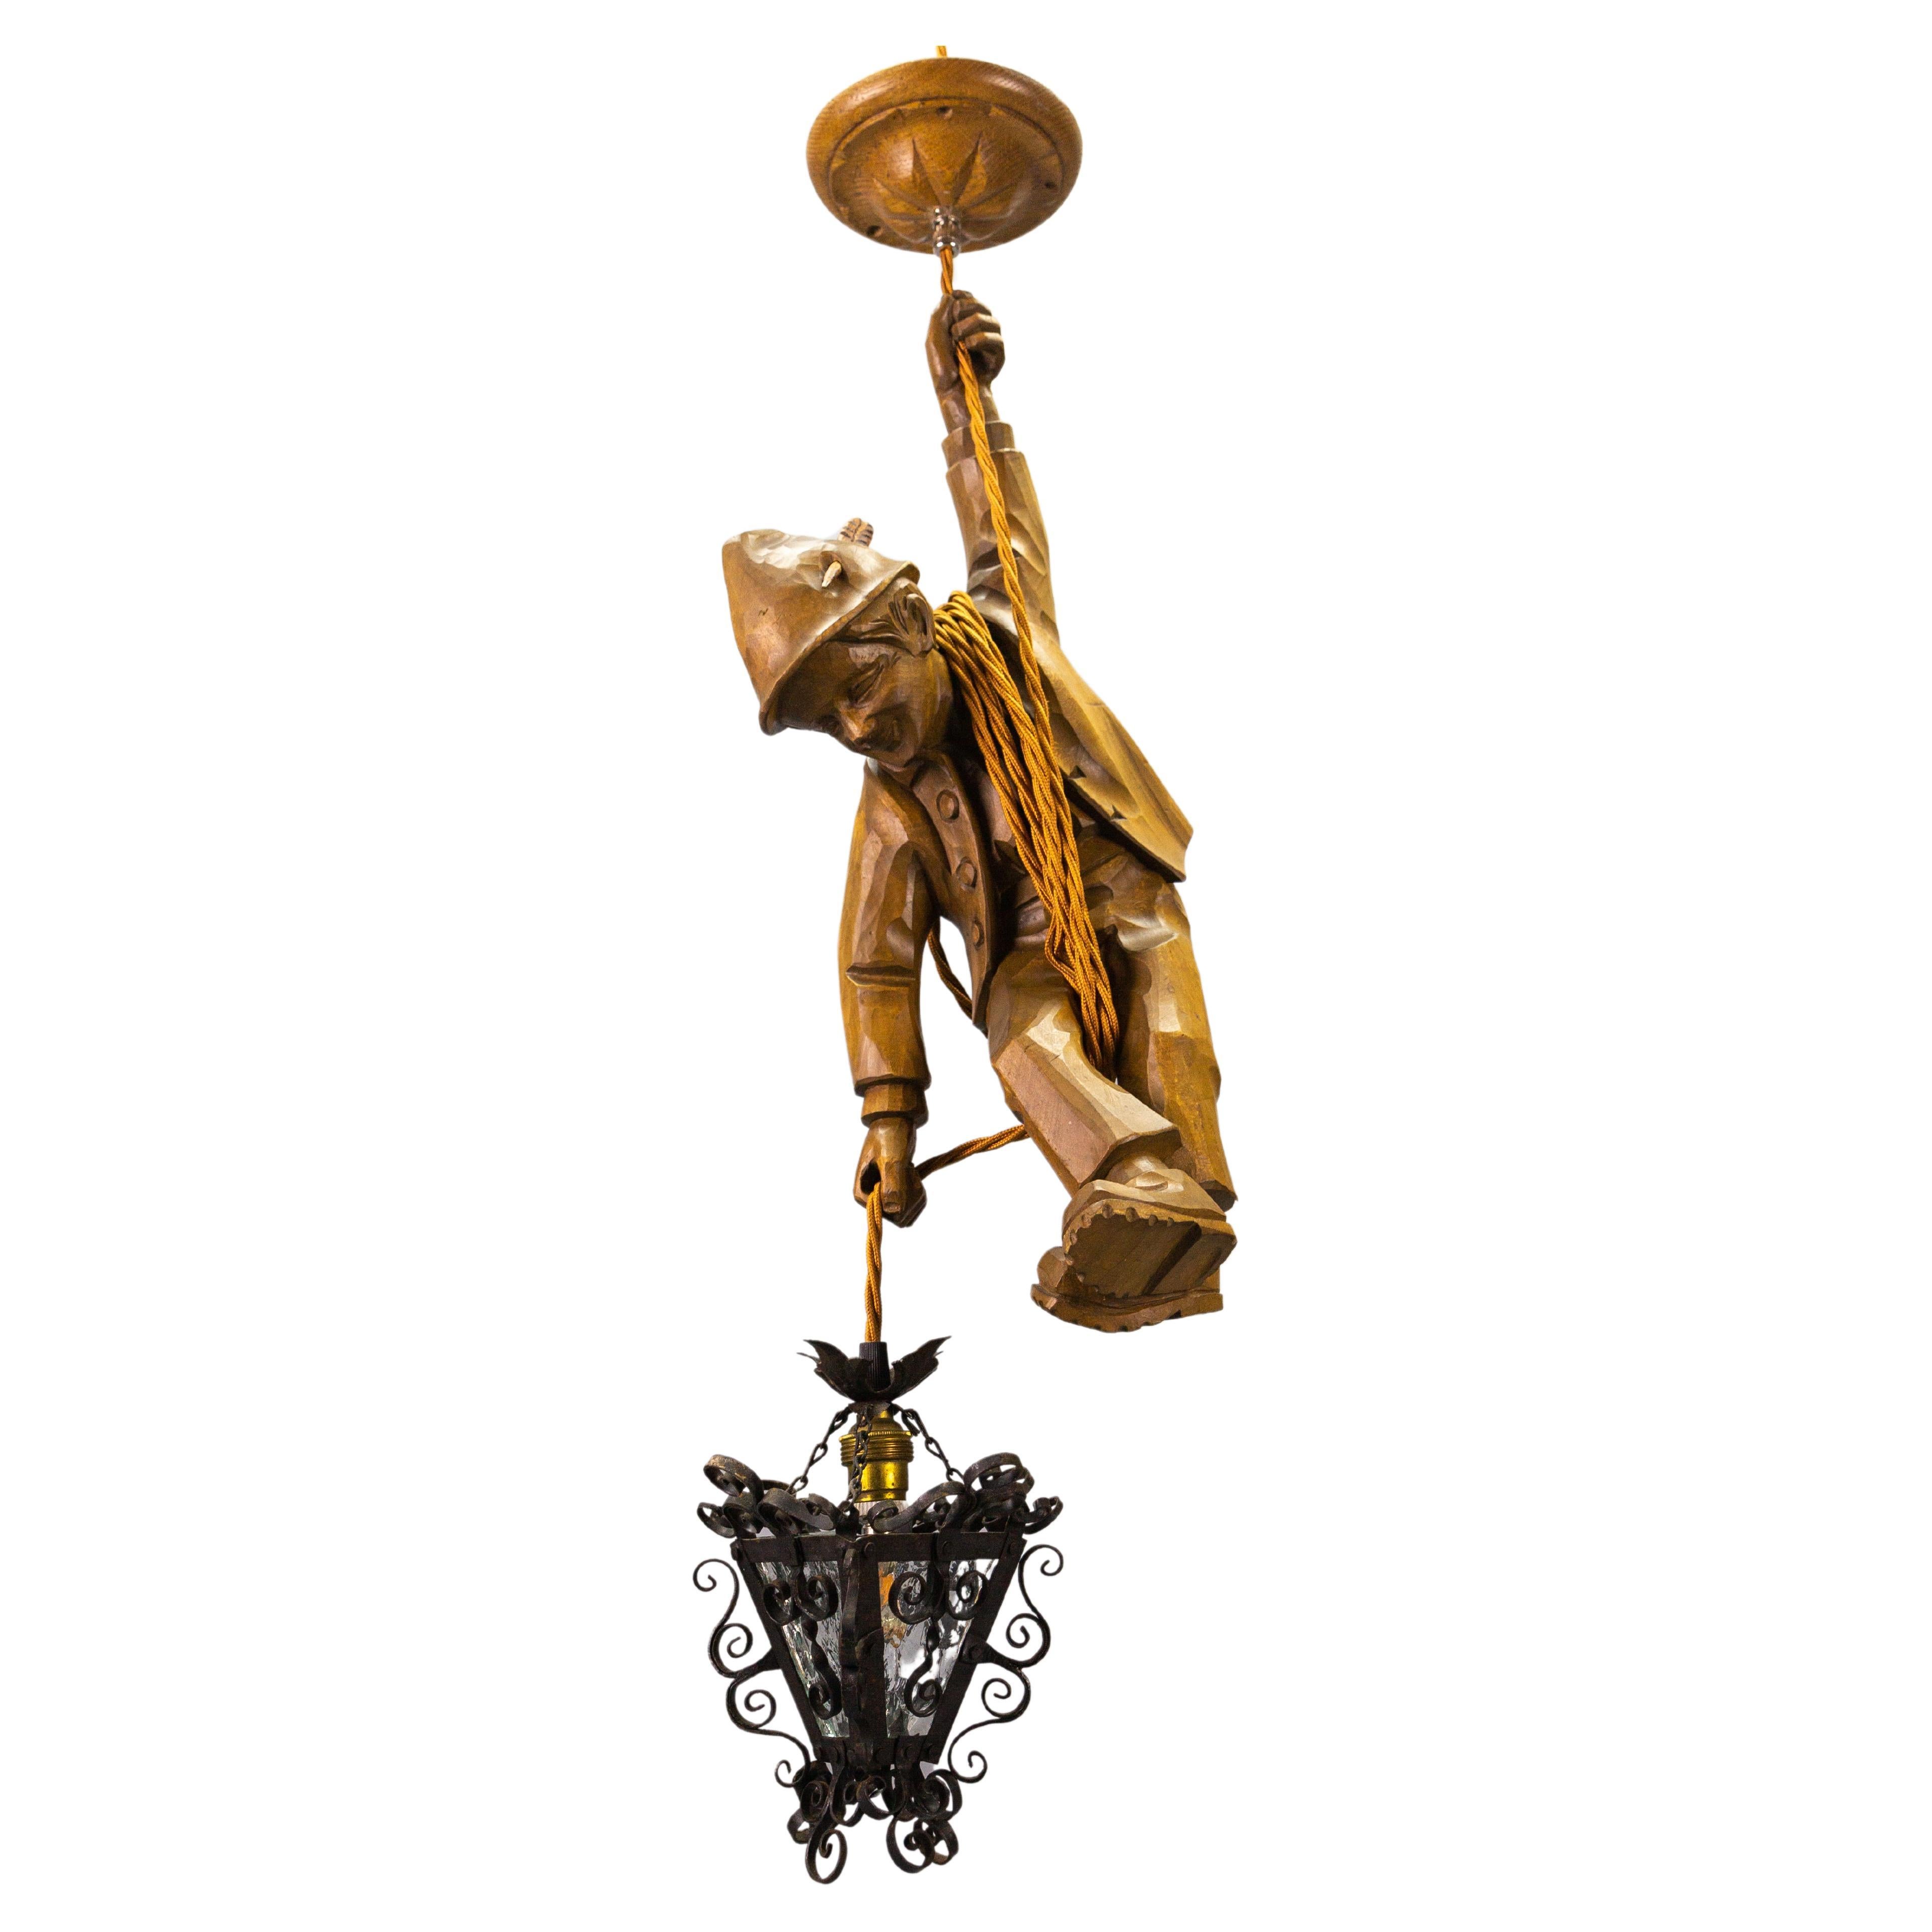 Suspension allemande sculptée à la main, figure de montagne grimpante avec lanterne